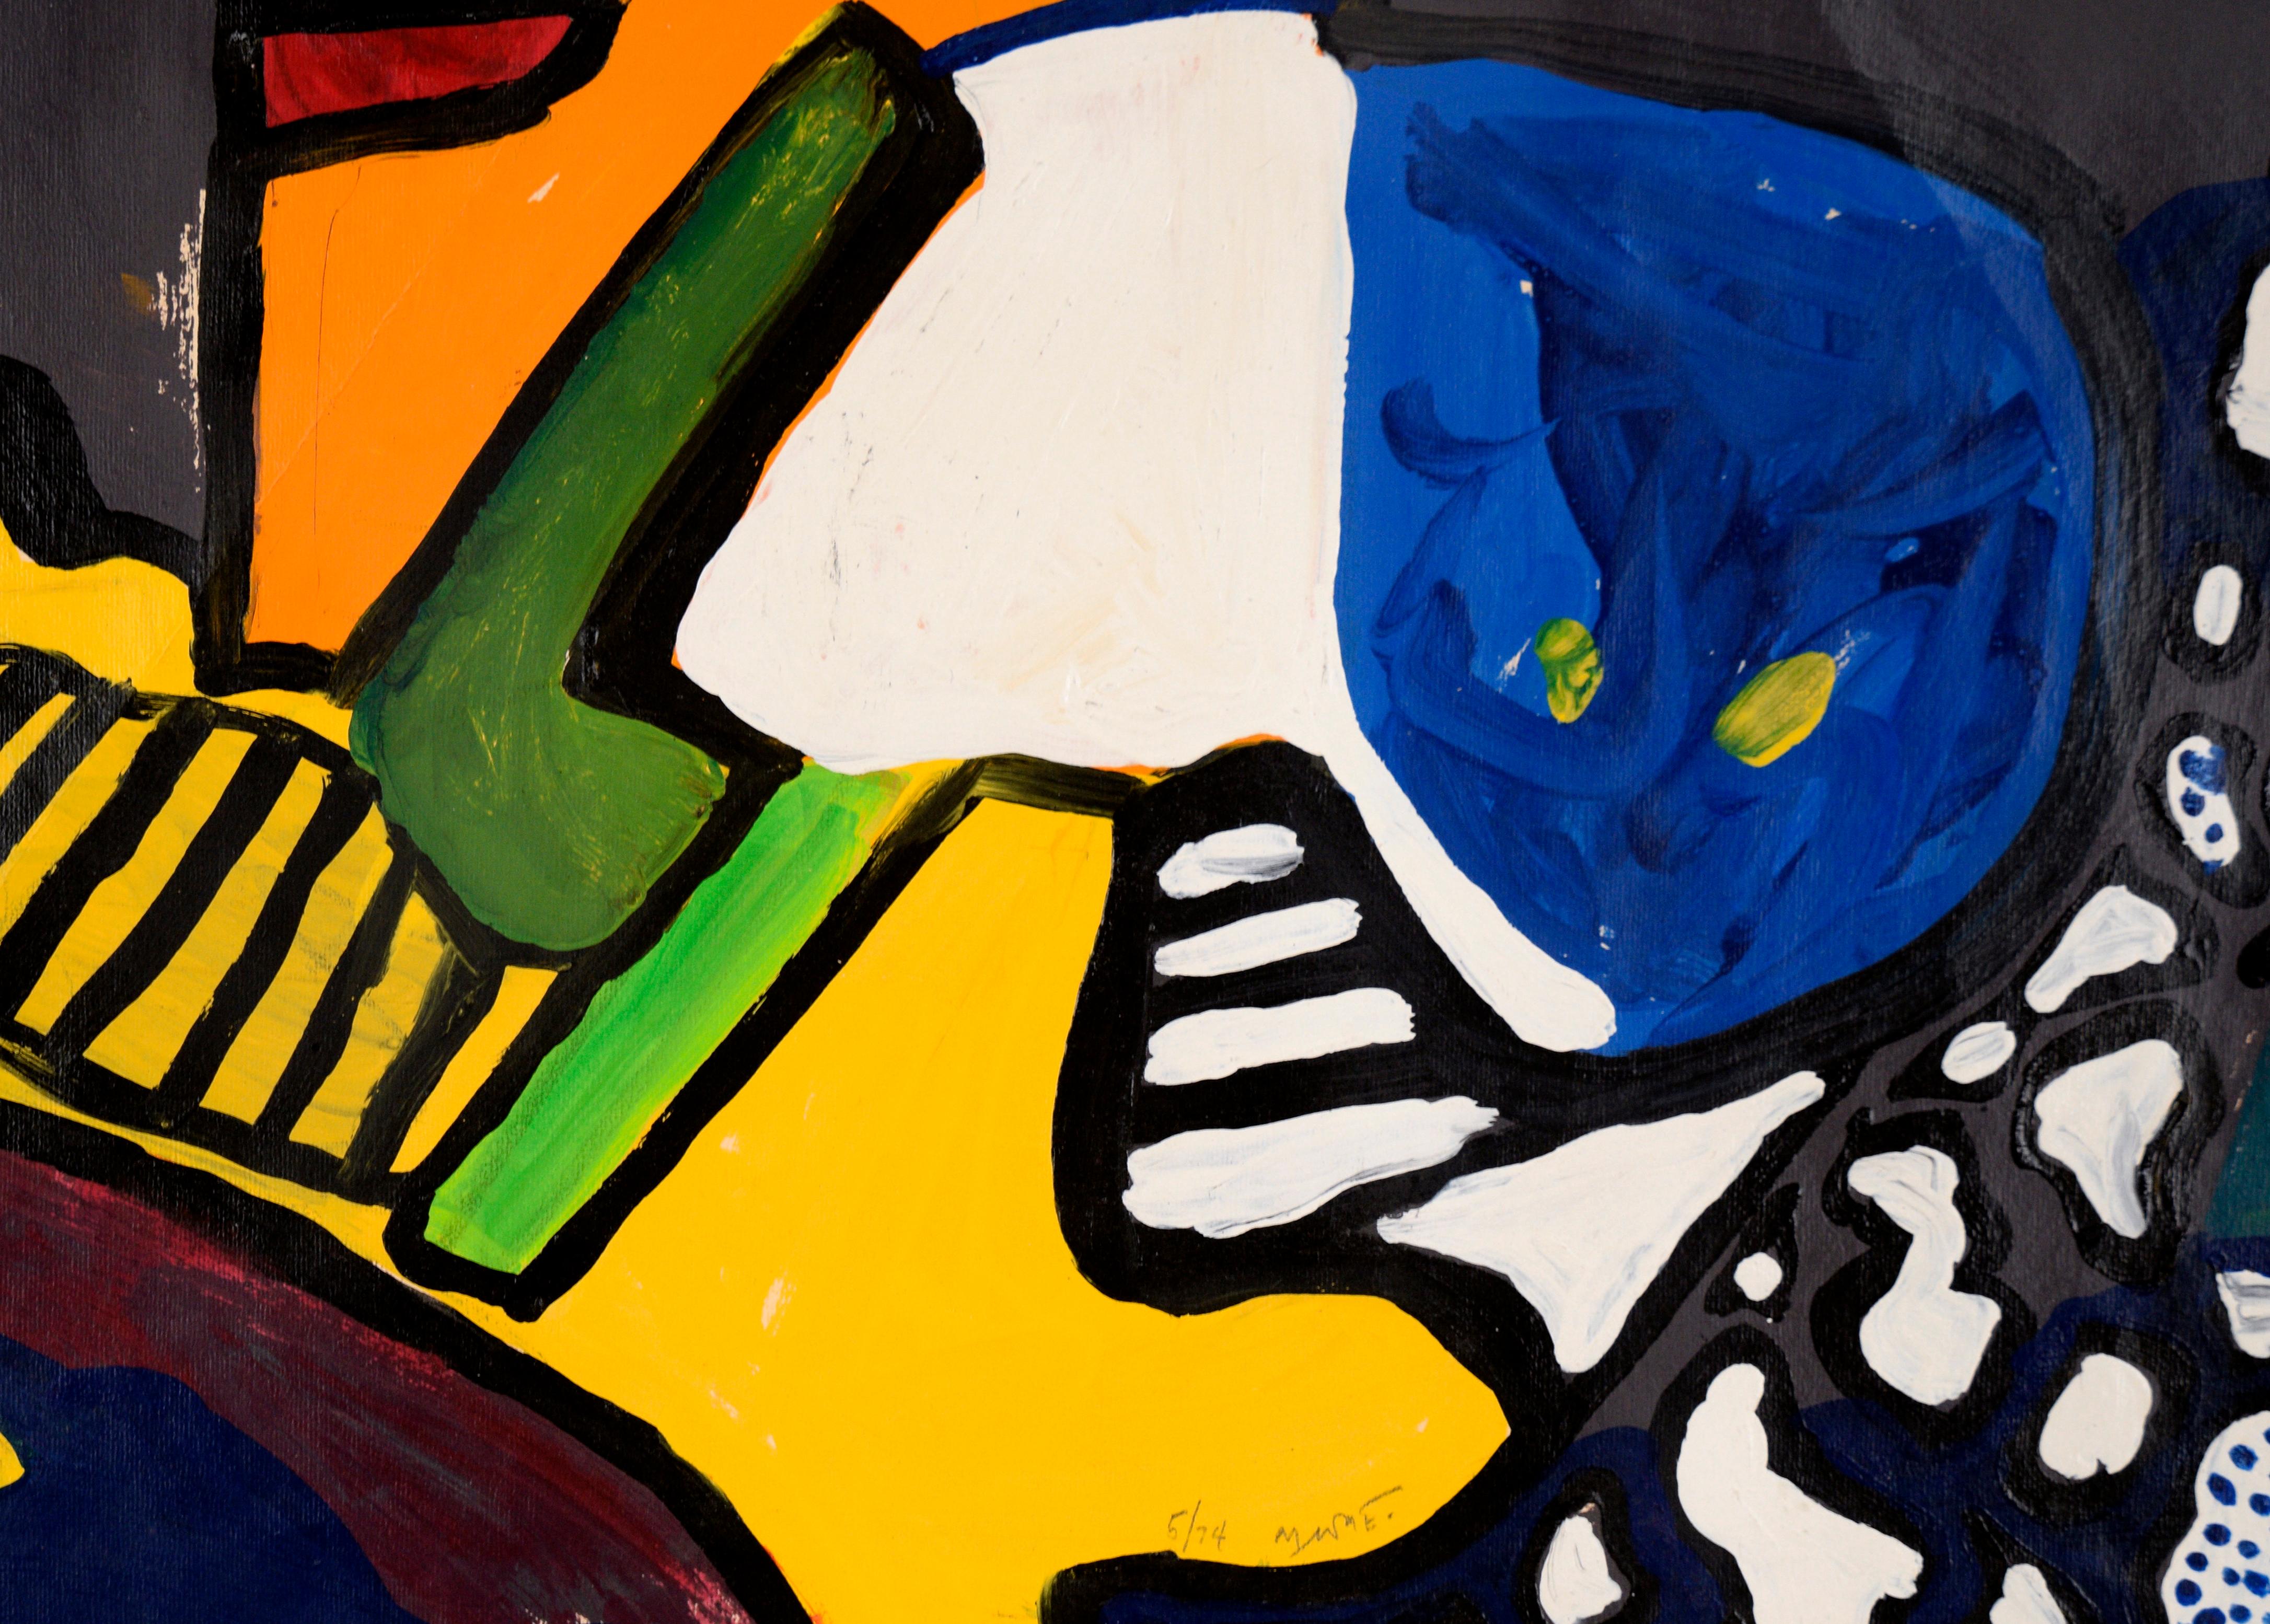 Farbenfrohe abstrakte Komposition von Michael William Eggleston (Amerikaner, 20. Jahrhundert). Kräftige Farben und Formen greifen ineinander und bilden eine kontrastreiche Komposition. Abschnitte in Orange, Gelb, Weiß und Blau sind schwarz umrandet